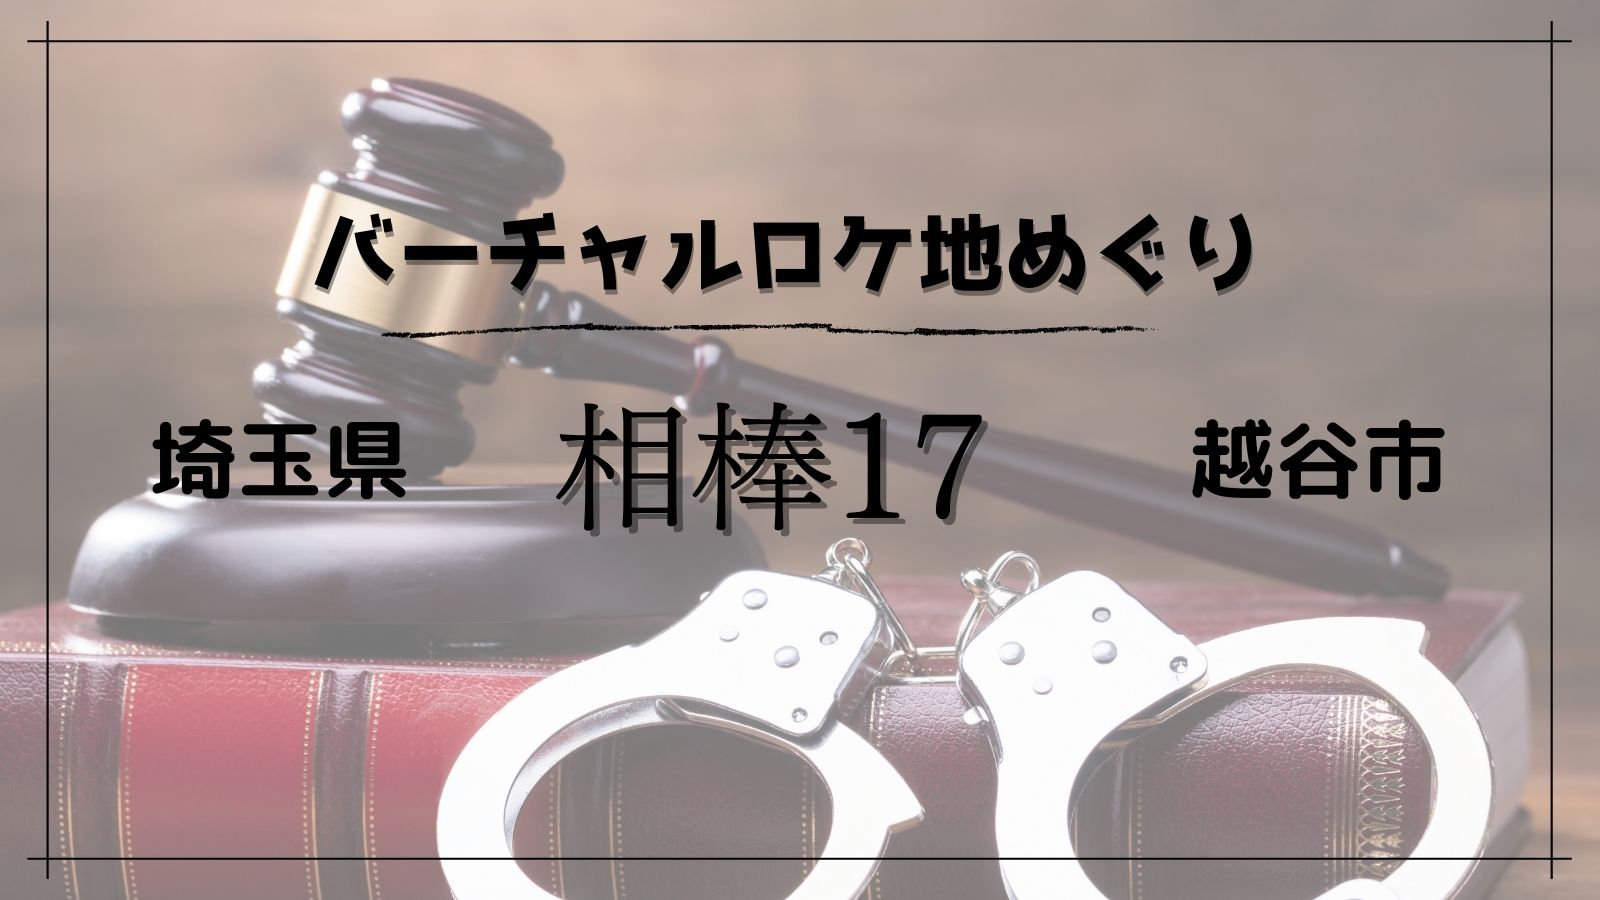 ドラマ 相棒season17 編 Googleマップで見られるドラマのロケ地特集 モリスギ